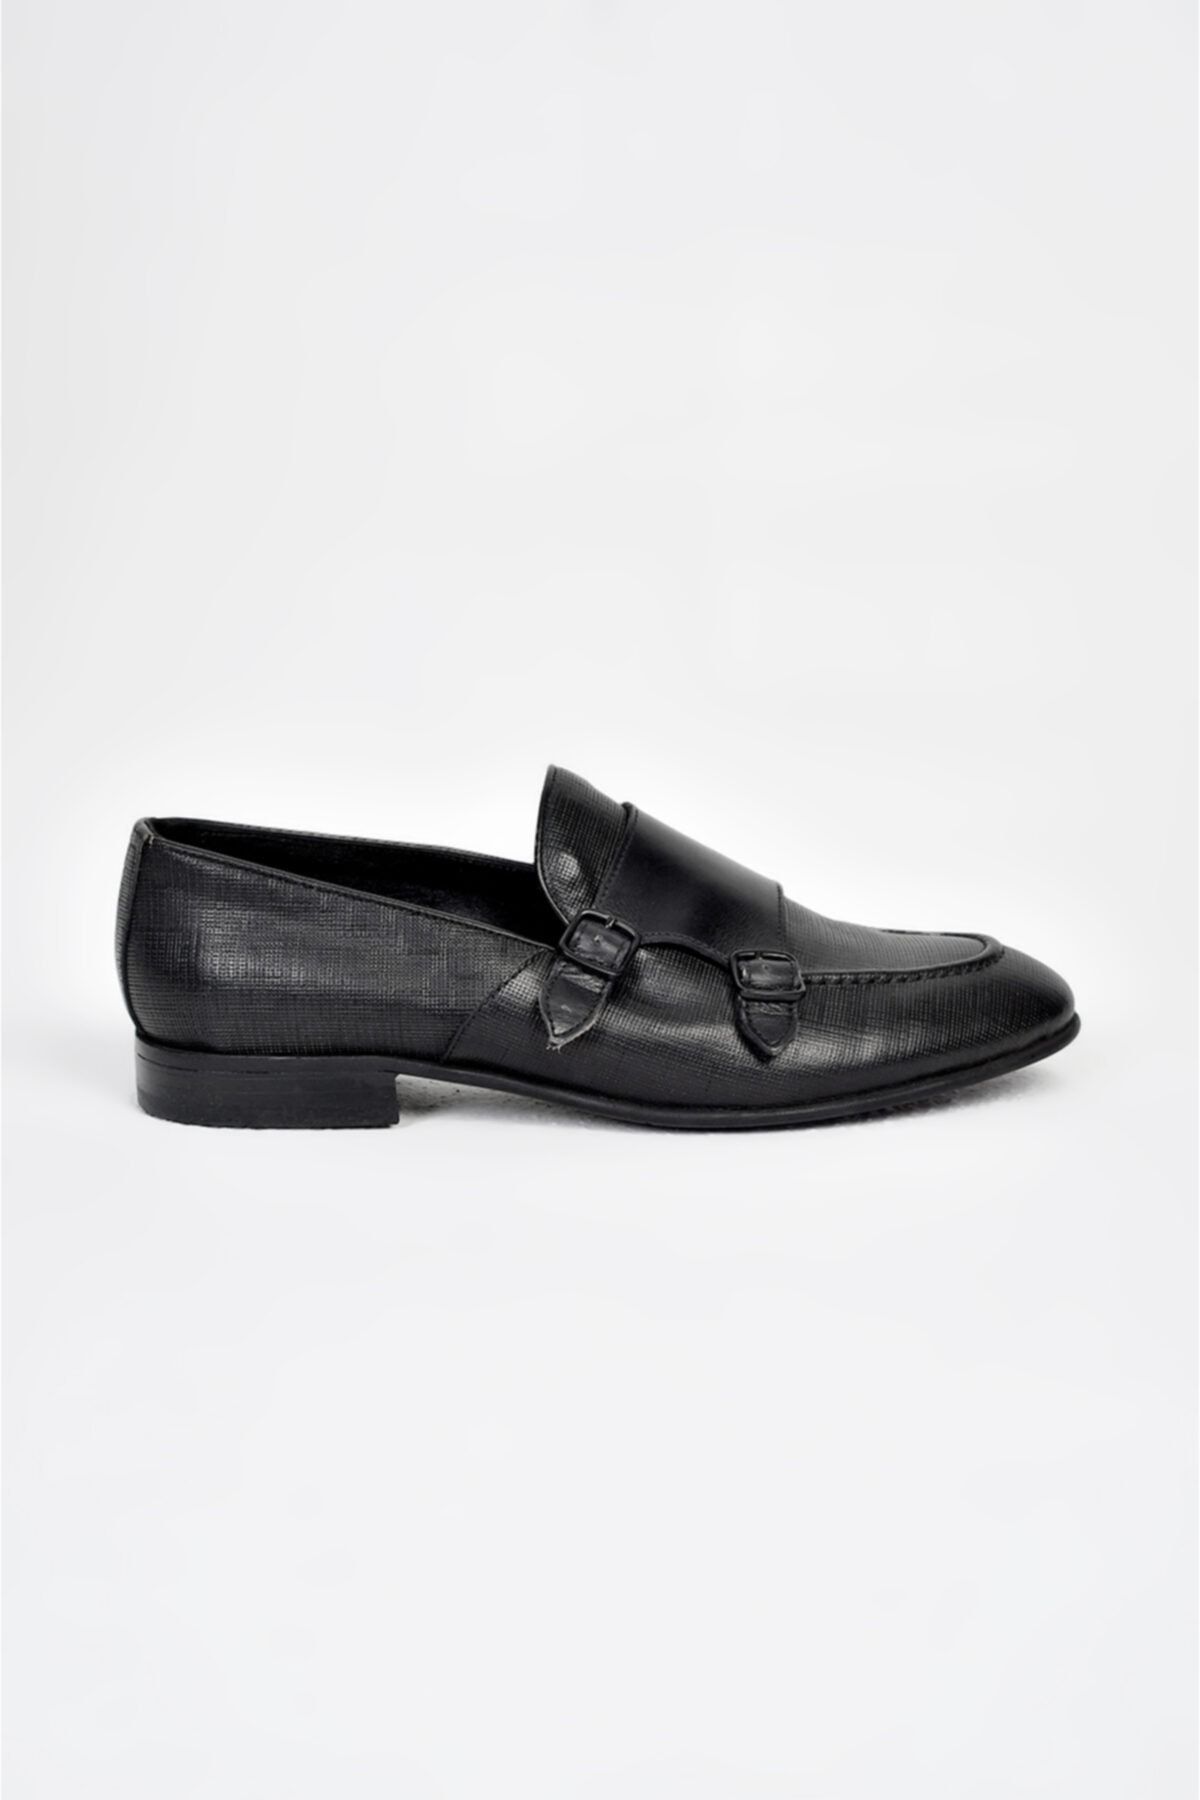 Avva Erkek Siyah Klasik Ayakkabı A91y8027